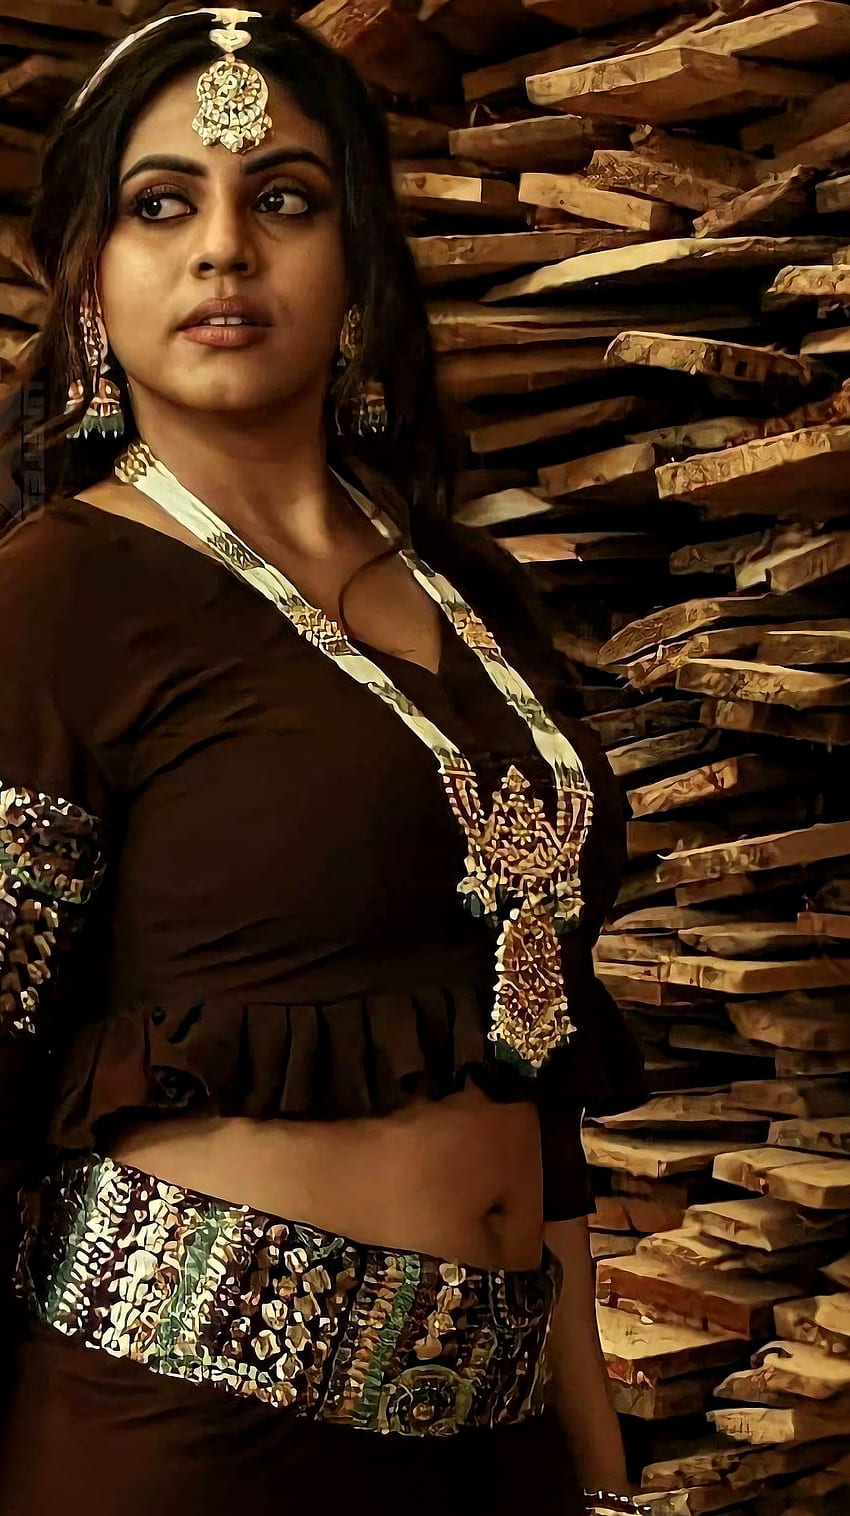 Ineya, aktris tamil, pusar wallpaper ponsel HD